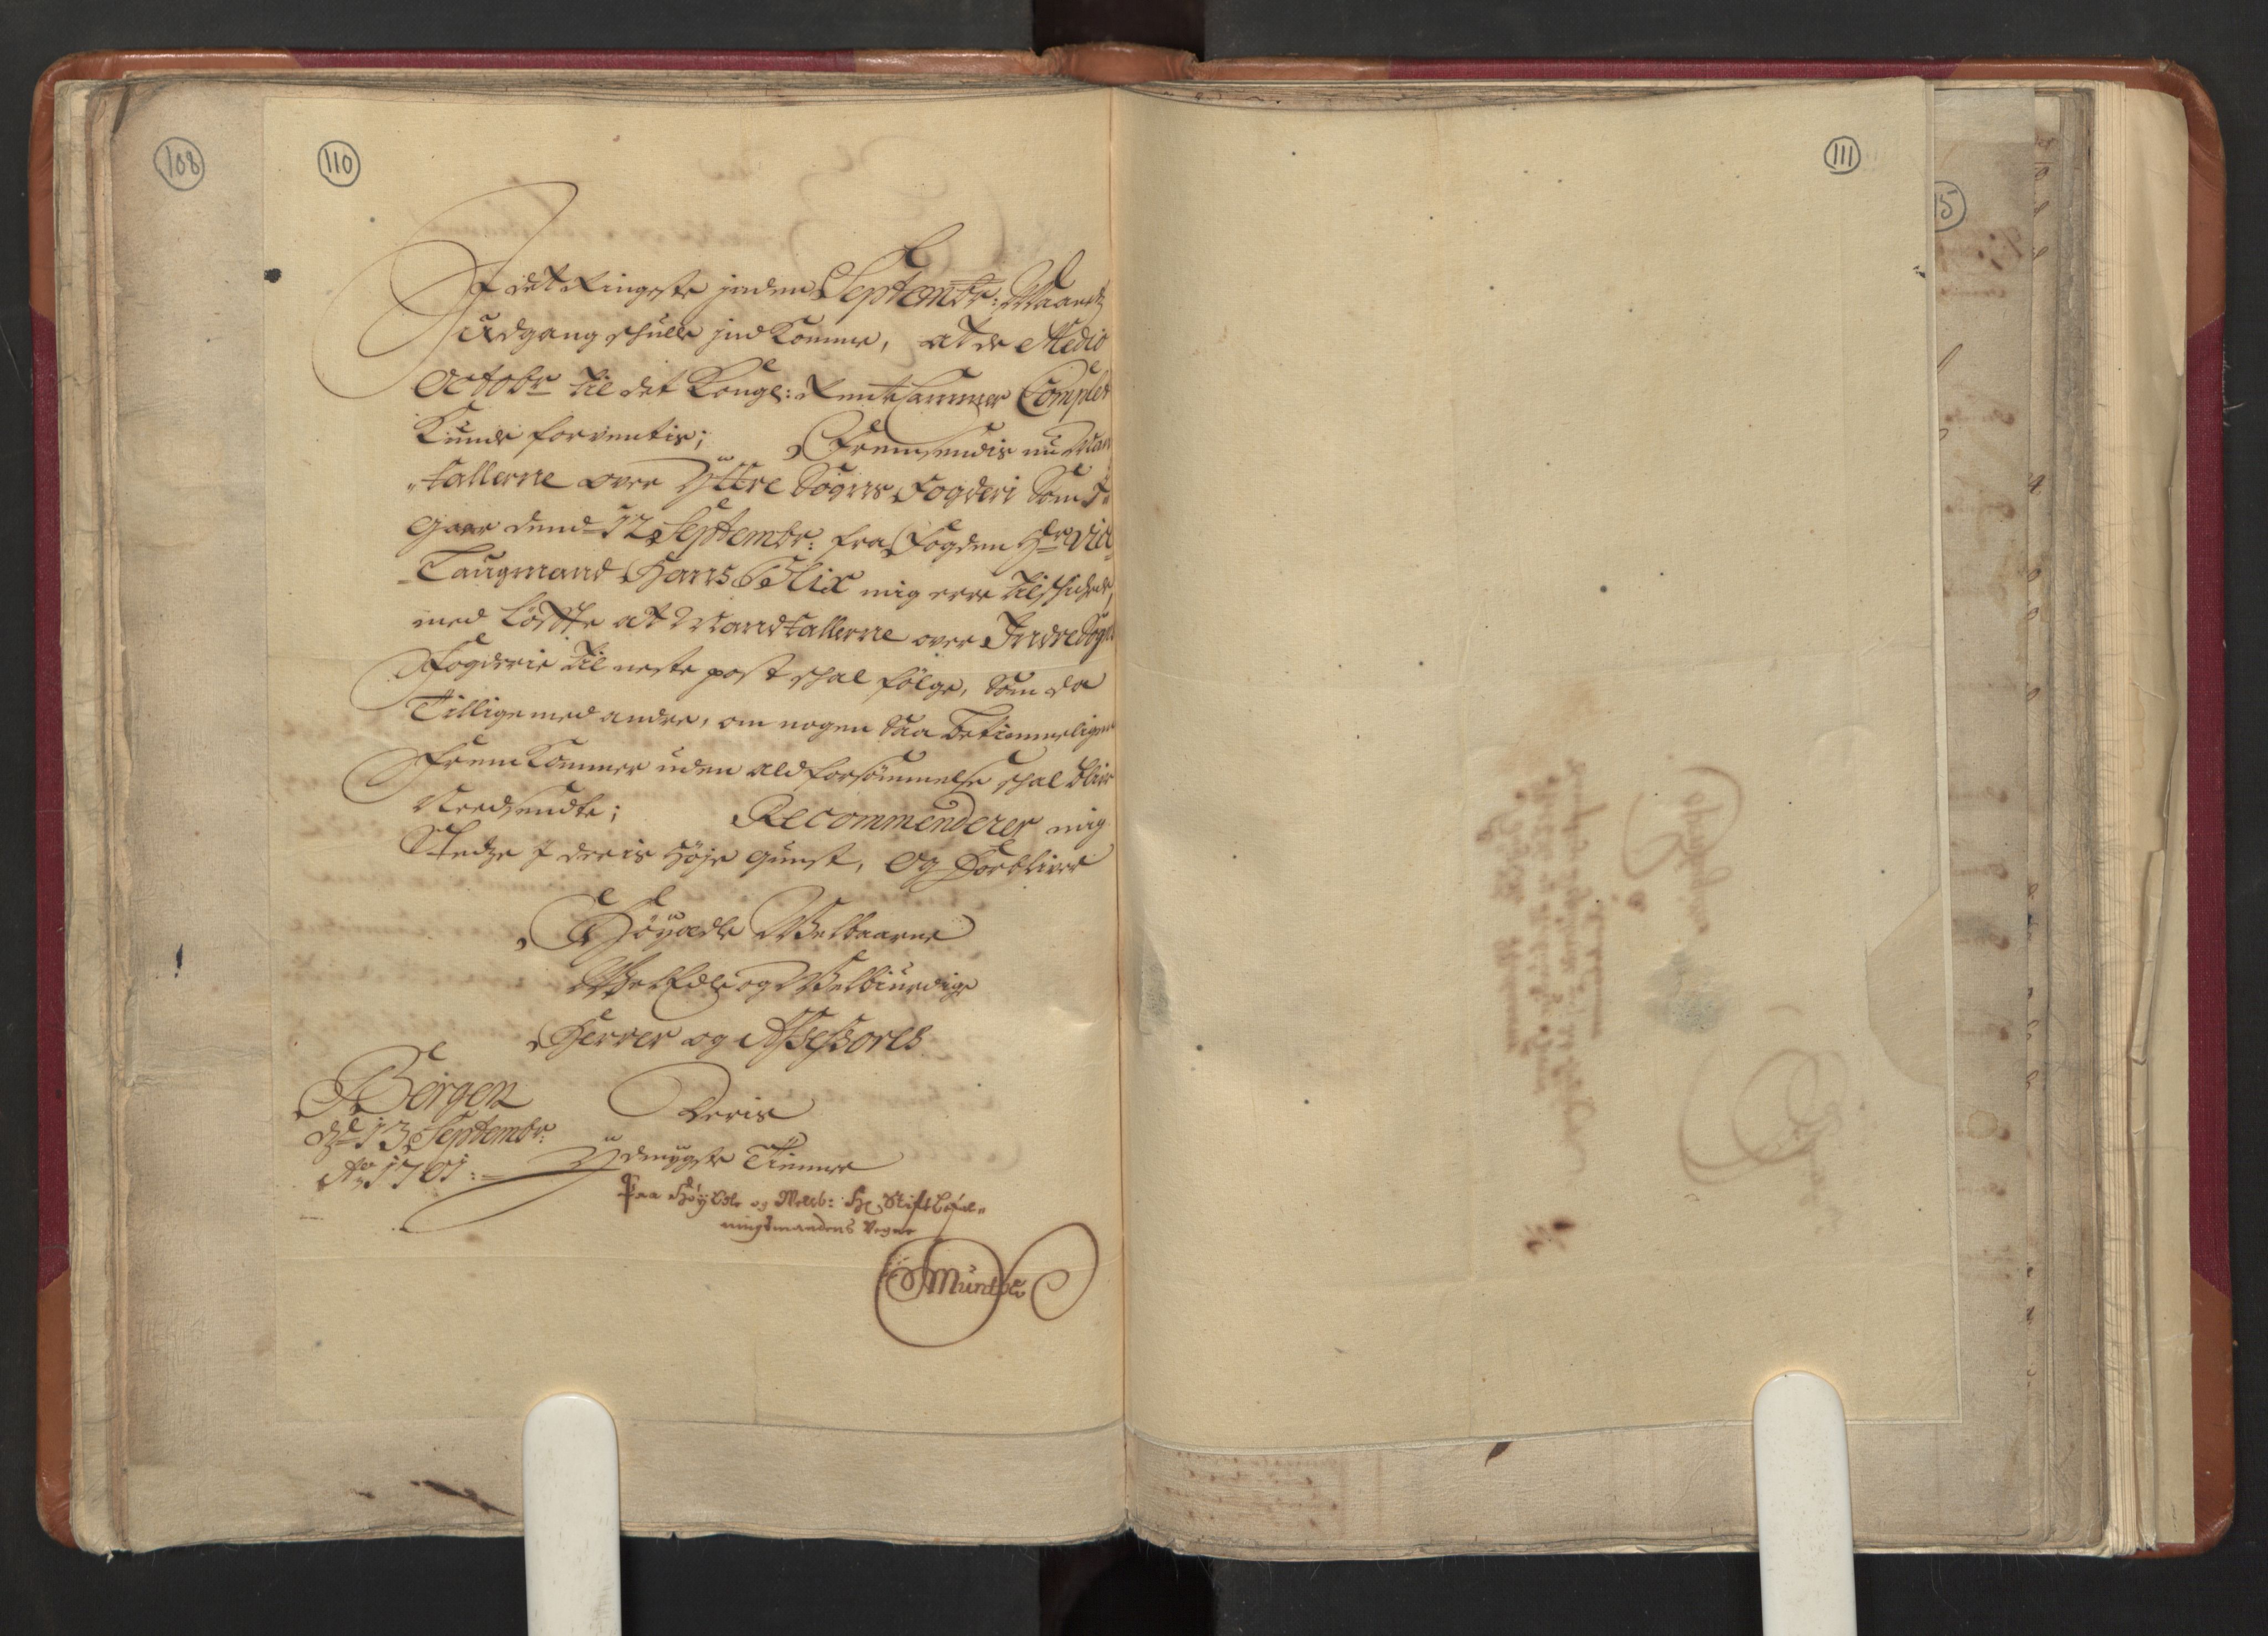 RA, Manntallet 1701, nr. 8: Ytre Sogn fogderi og Indre Sogn fogderi, 1701, s. 110-111